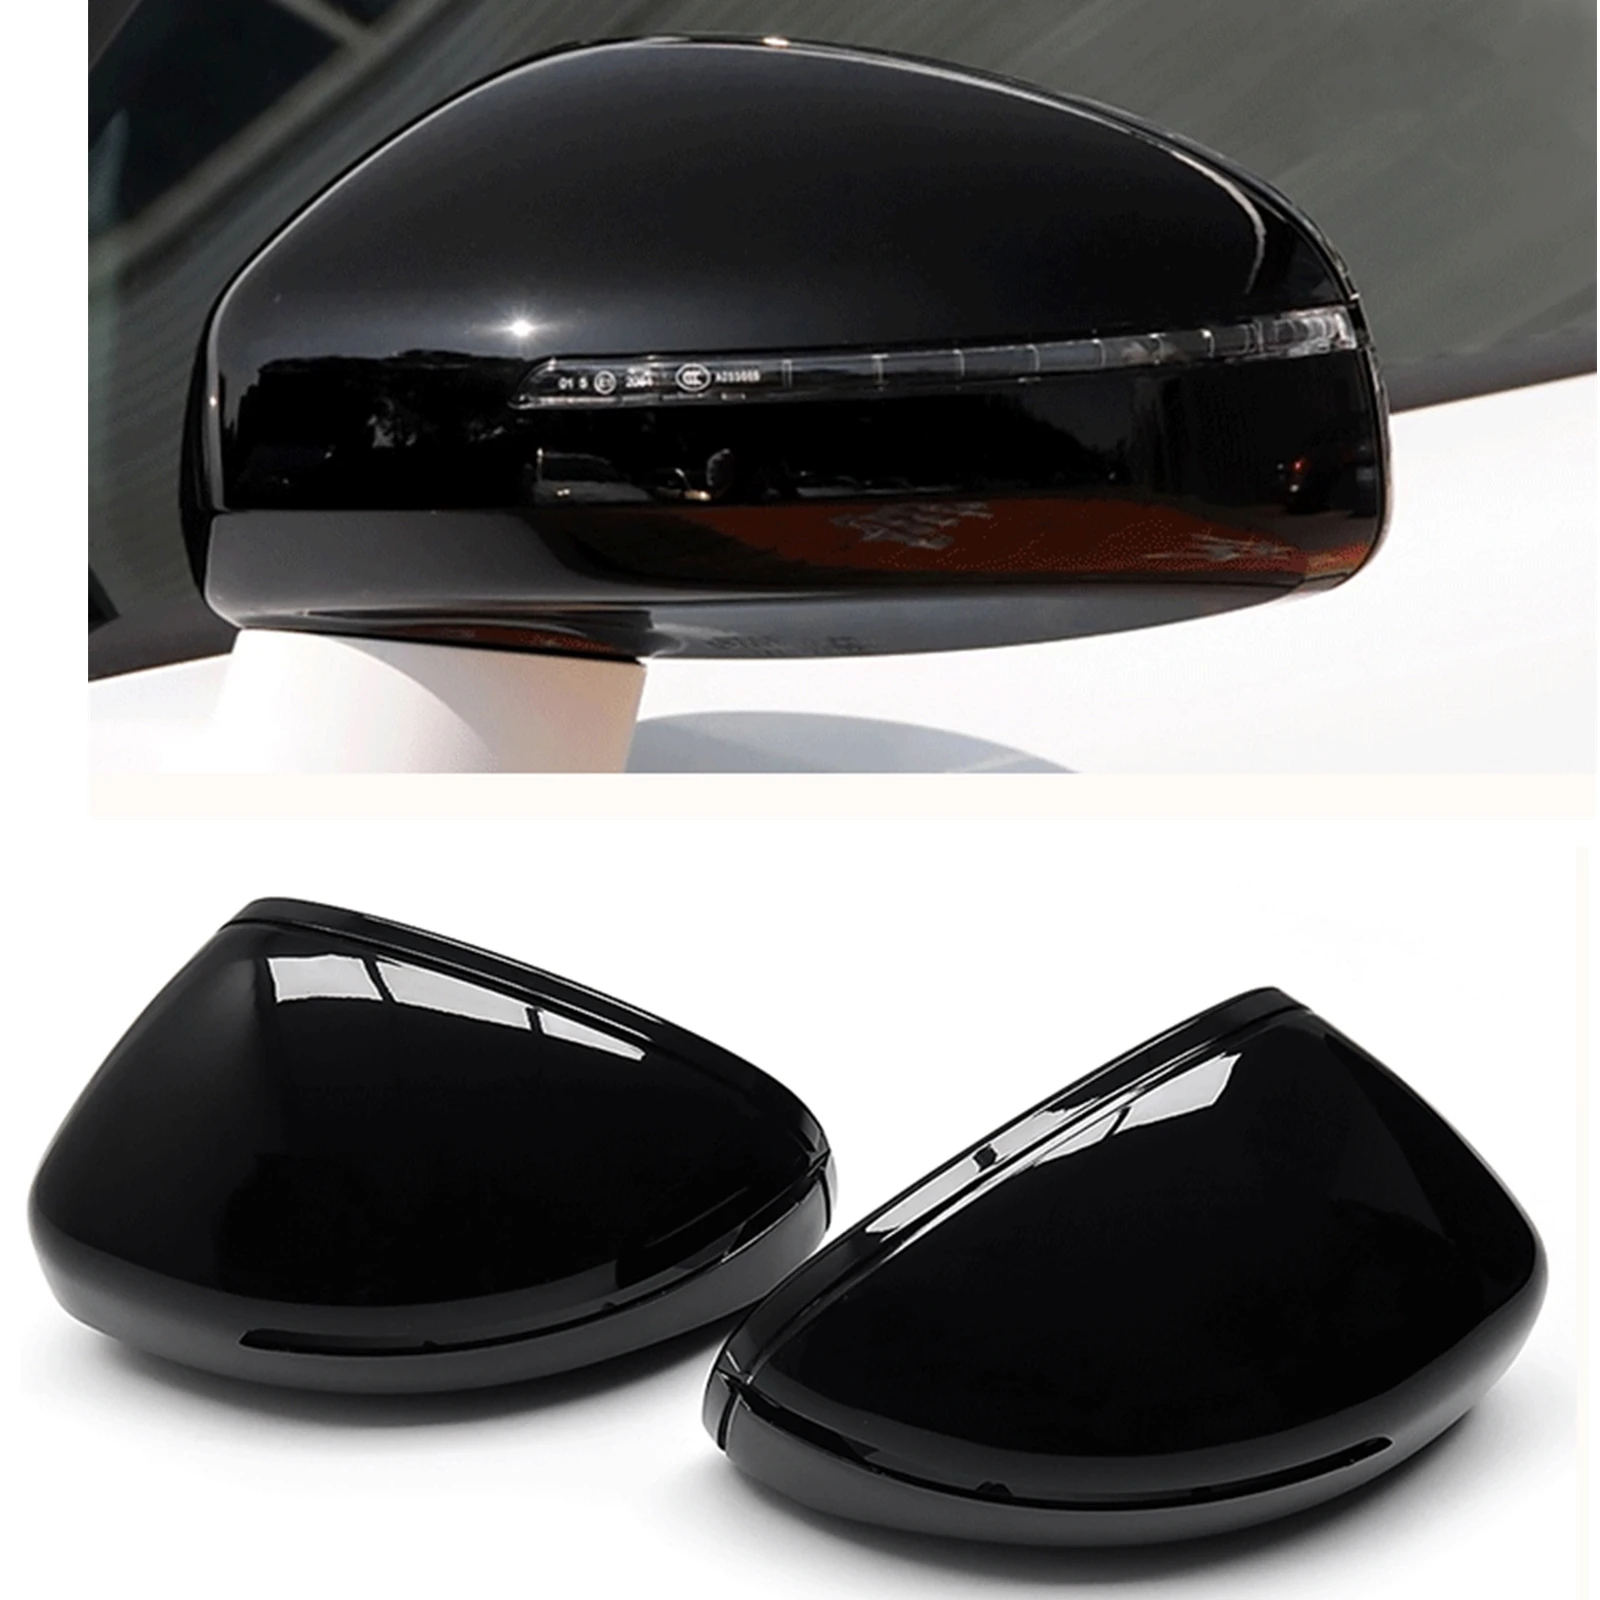 

Глянцевый черный чехол для зеркала, замена для Audi TT TTS MK2 8J 2007-2014 TTRS R8, боковые крышки заднего вида автомобиля, аксессуары для заднего вида